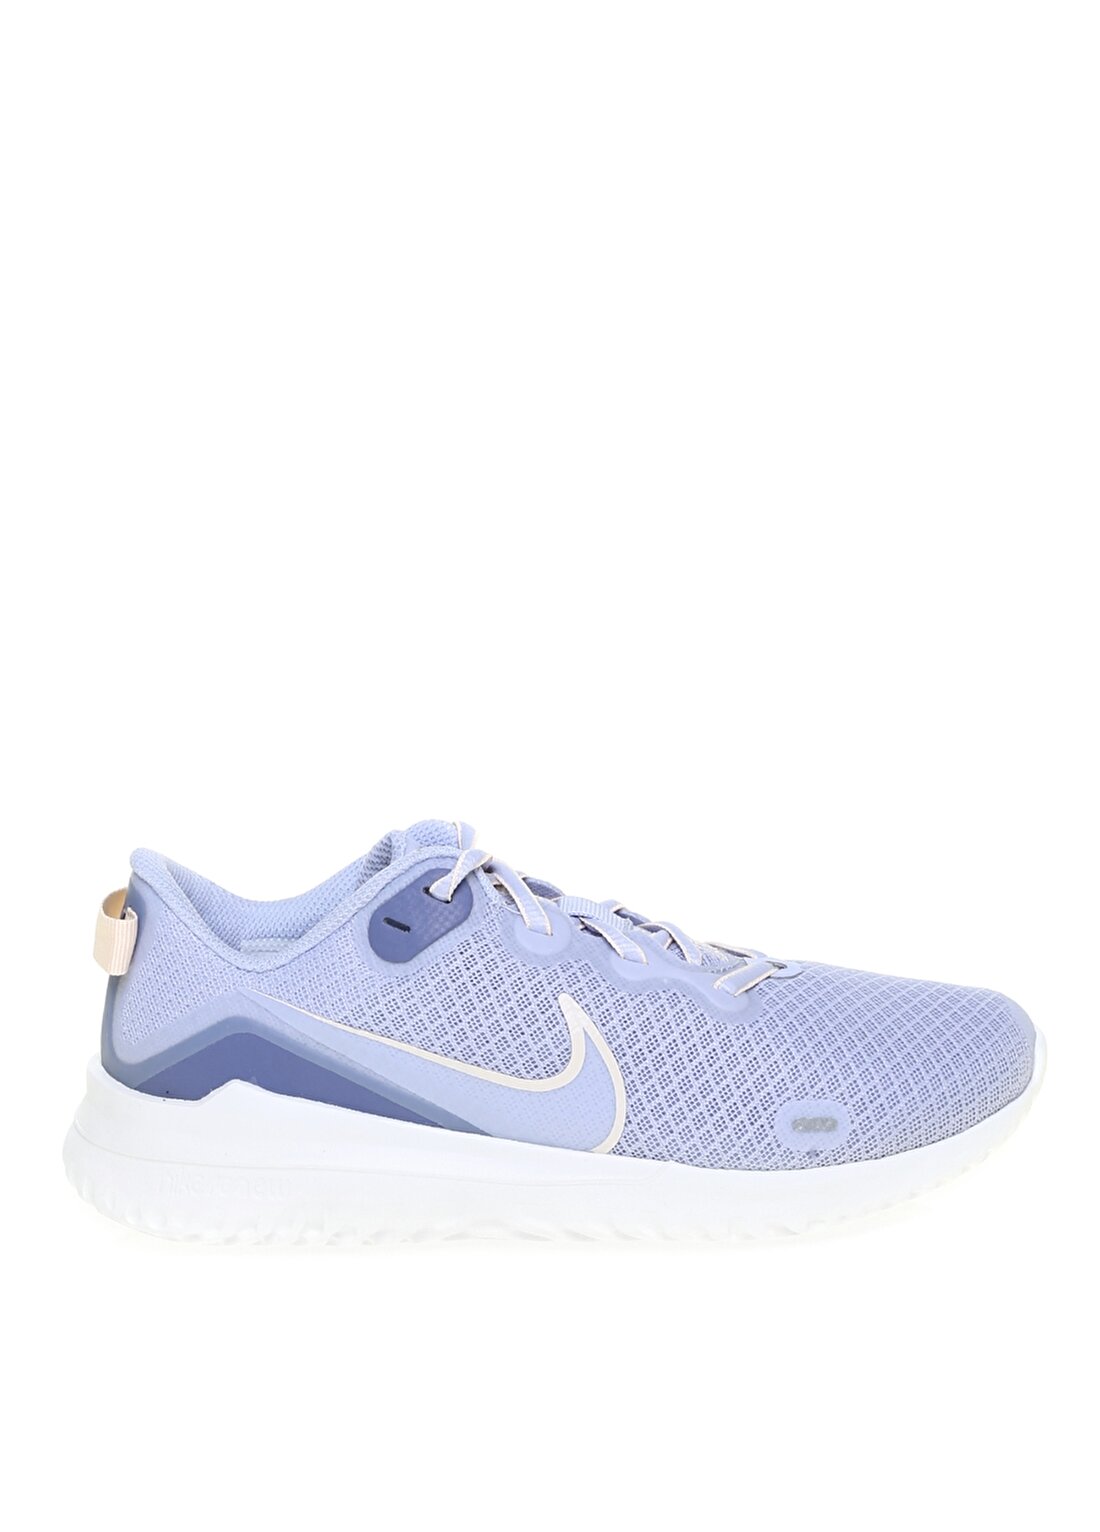 Nike CD0314-006 Renew Rıde Mavi Kadın Koşu Ayakkabısı